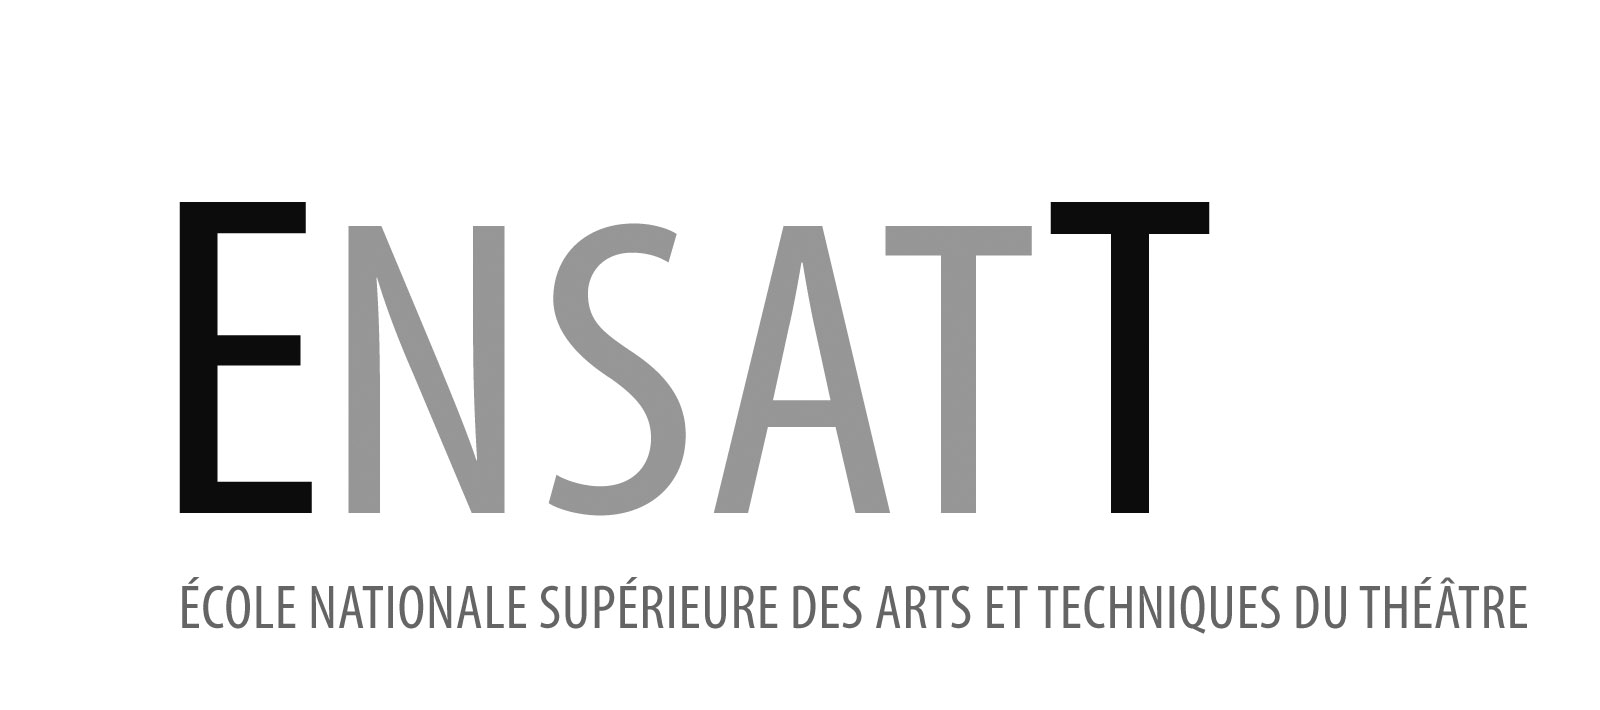 /Ecole Nationale Supérieure des Arts et Techniques du Théâtre